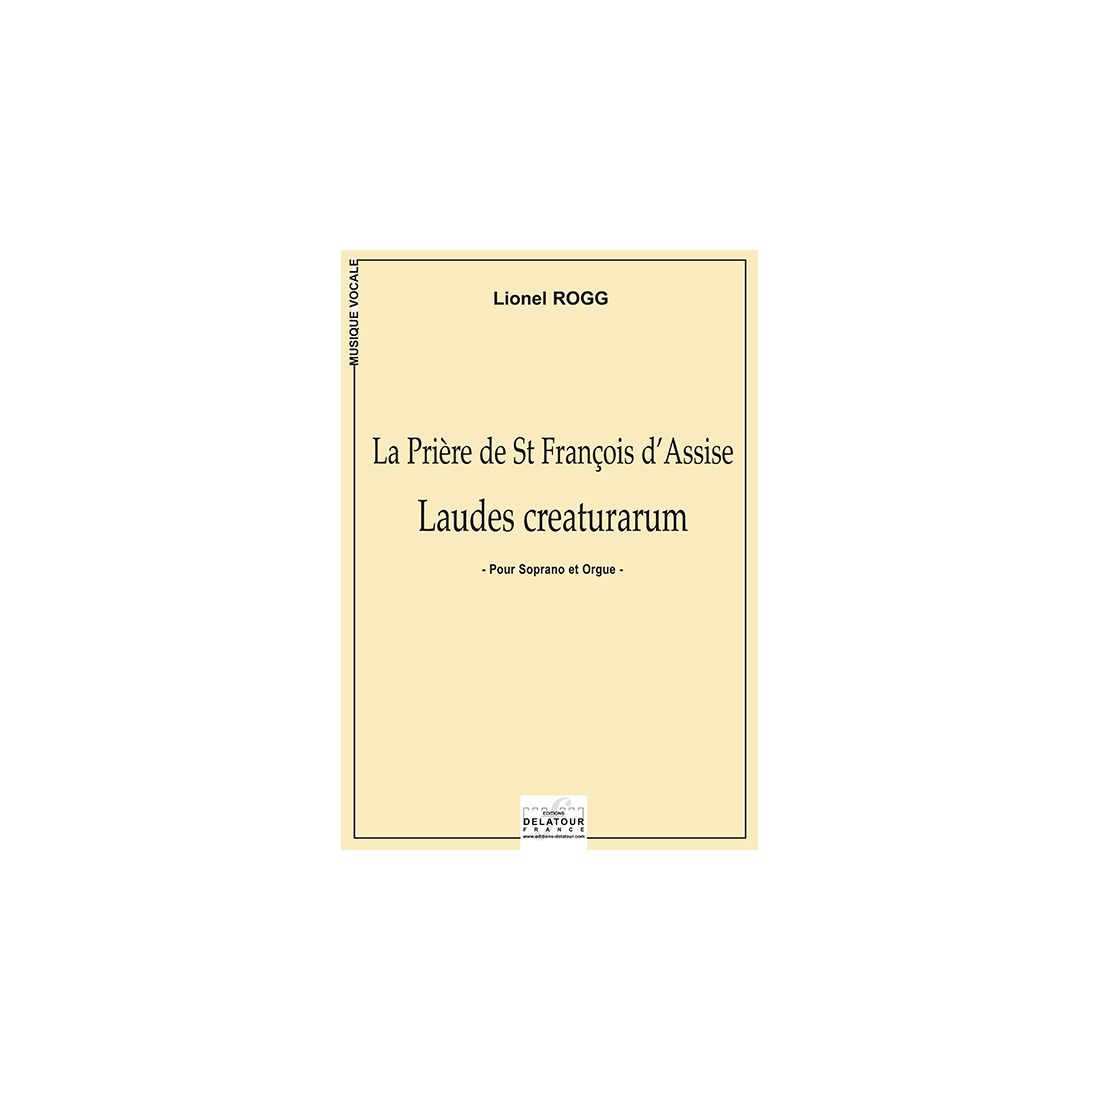 Laudes creaturarum for soprano and organ